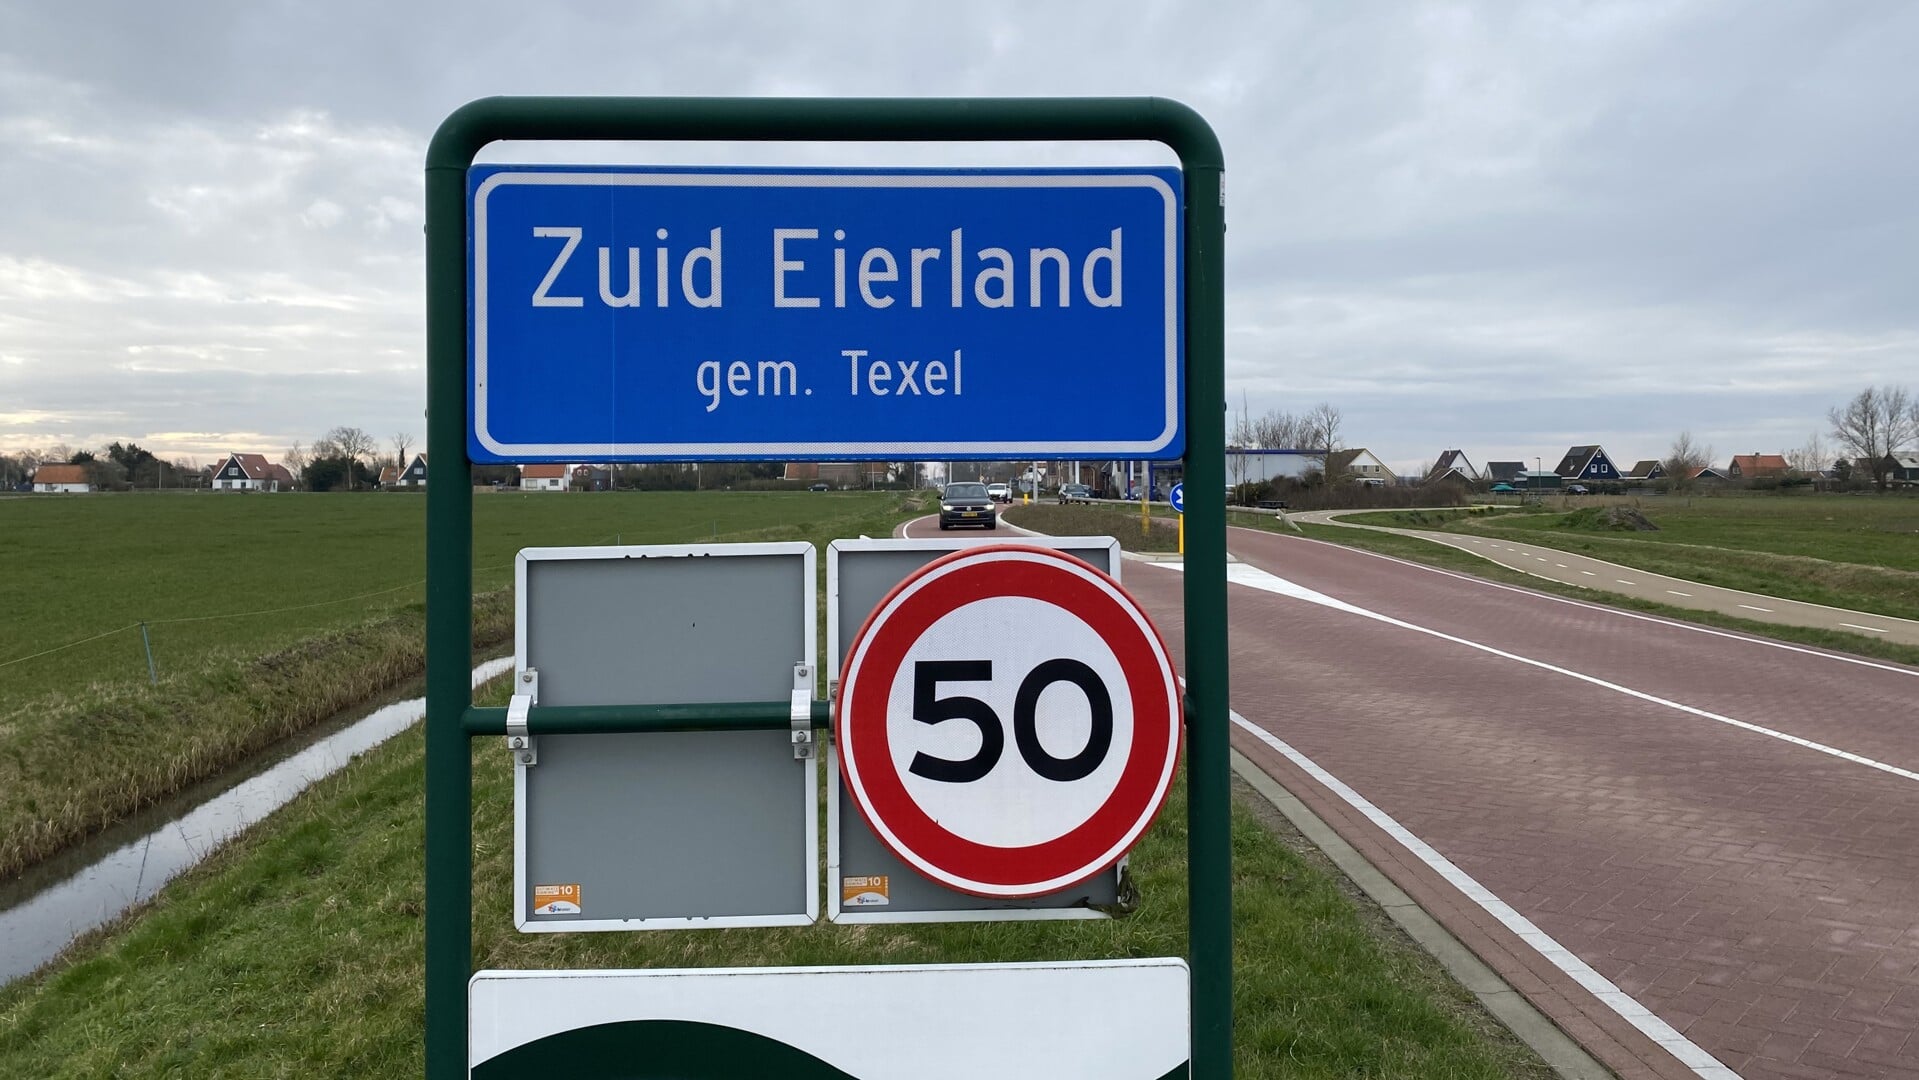 In de bebouwde kom van Zuid-Eierland geldt een maximumsnelheid van 50 km per uur.